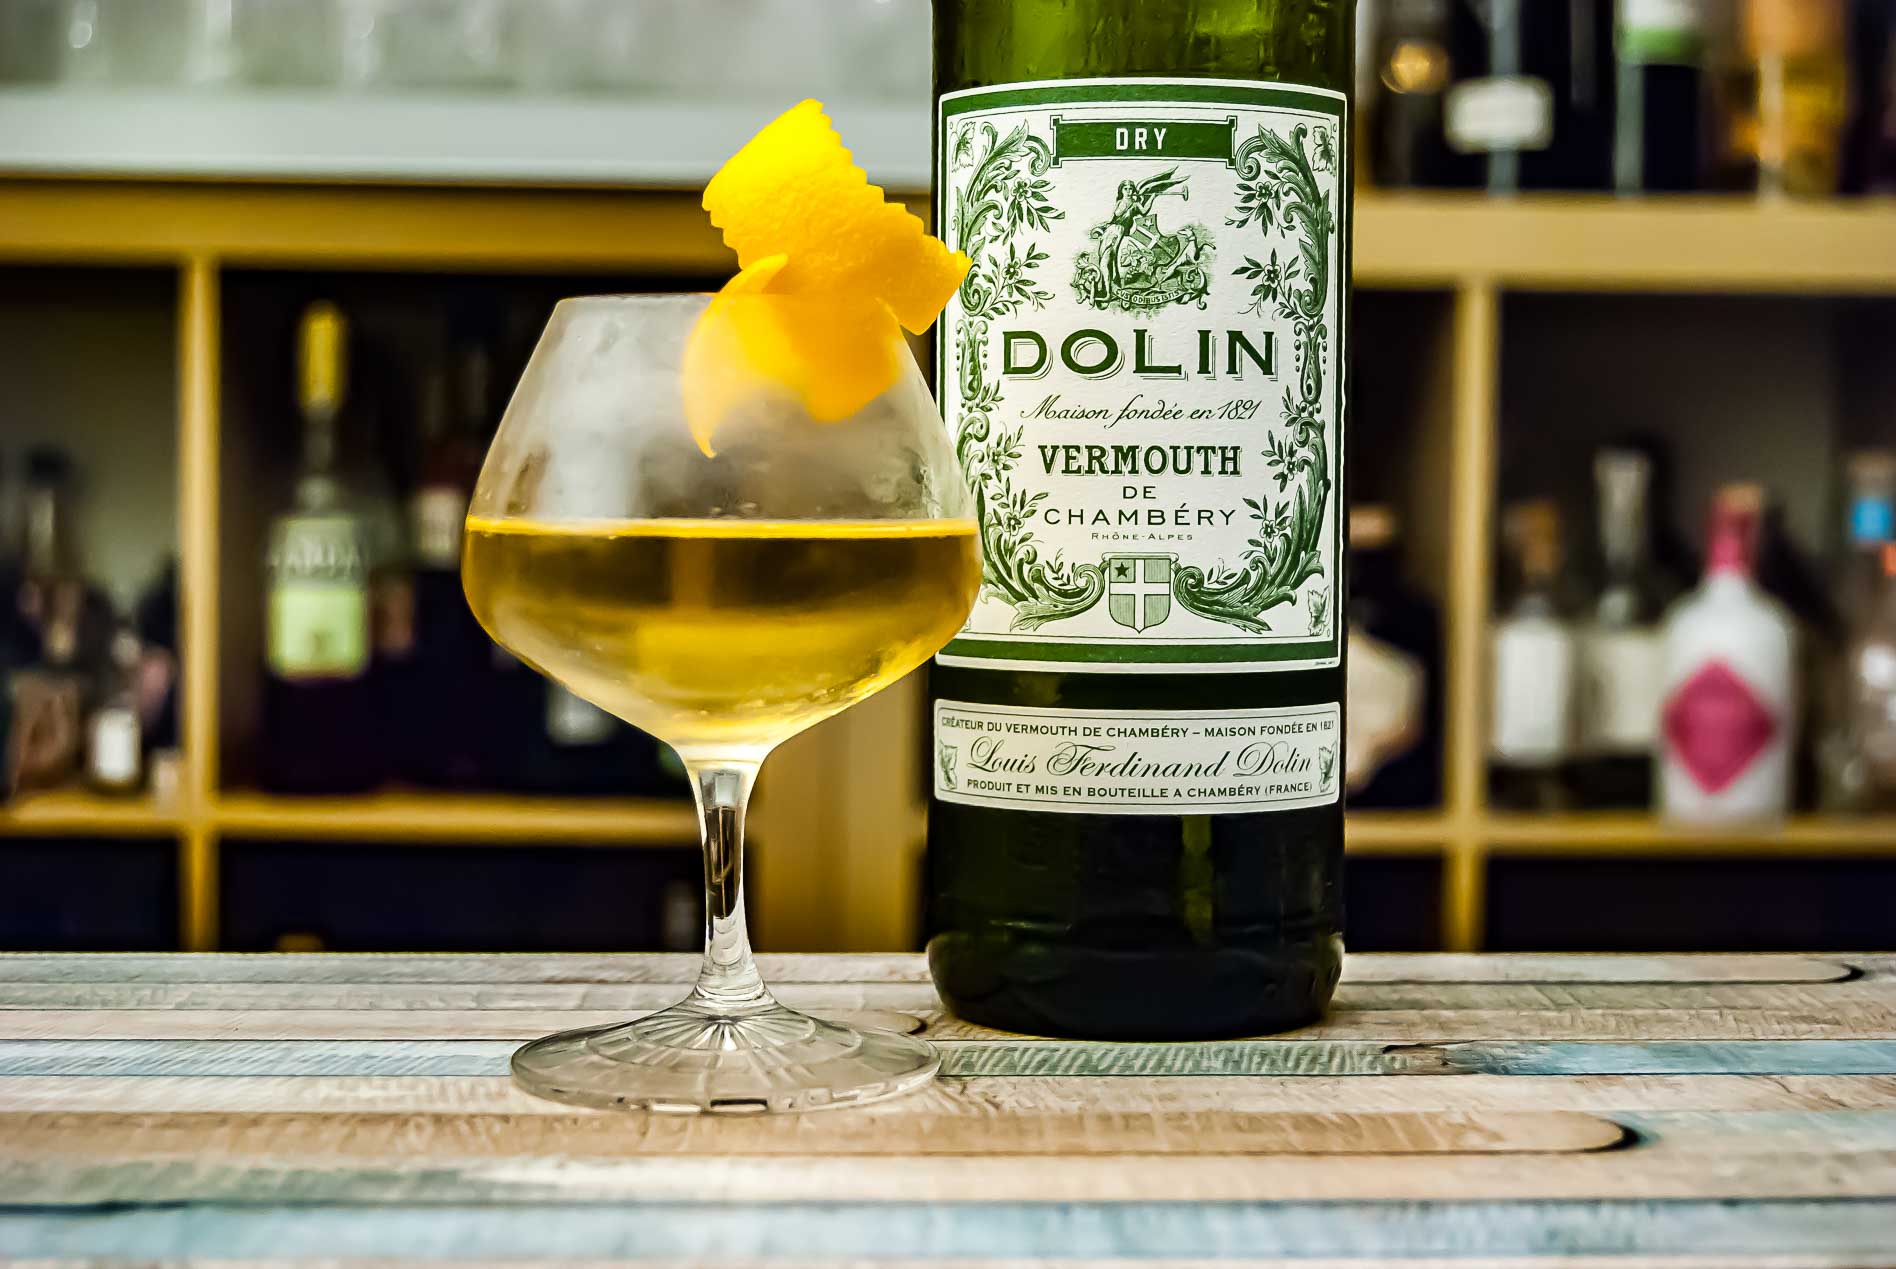 günstig Vermouth und Dry zu trocken, Dolin - französisch